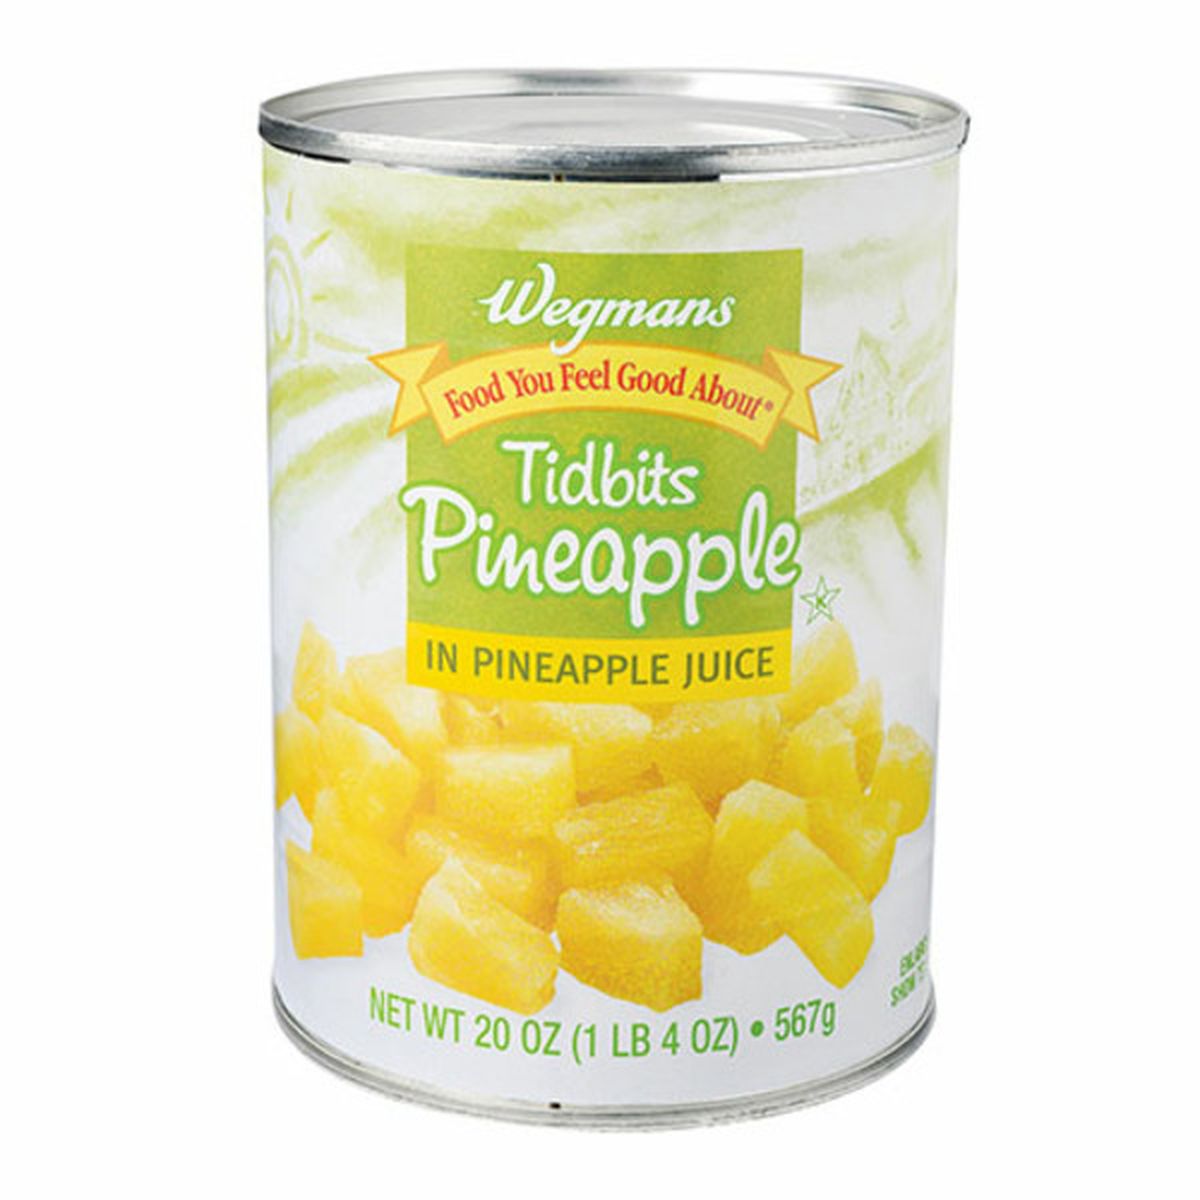 Calories in Wegmans Tidbits Pineapple in Pineapple Juice